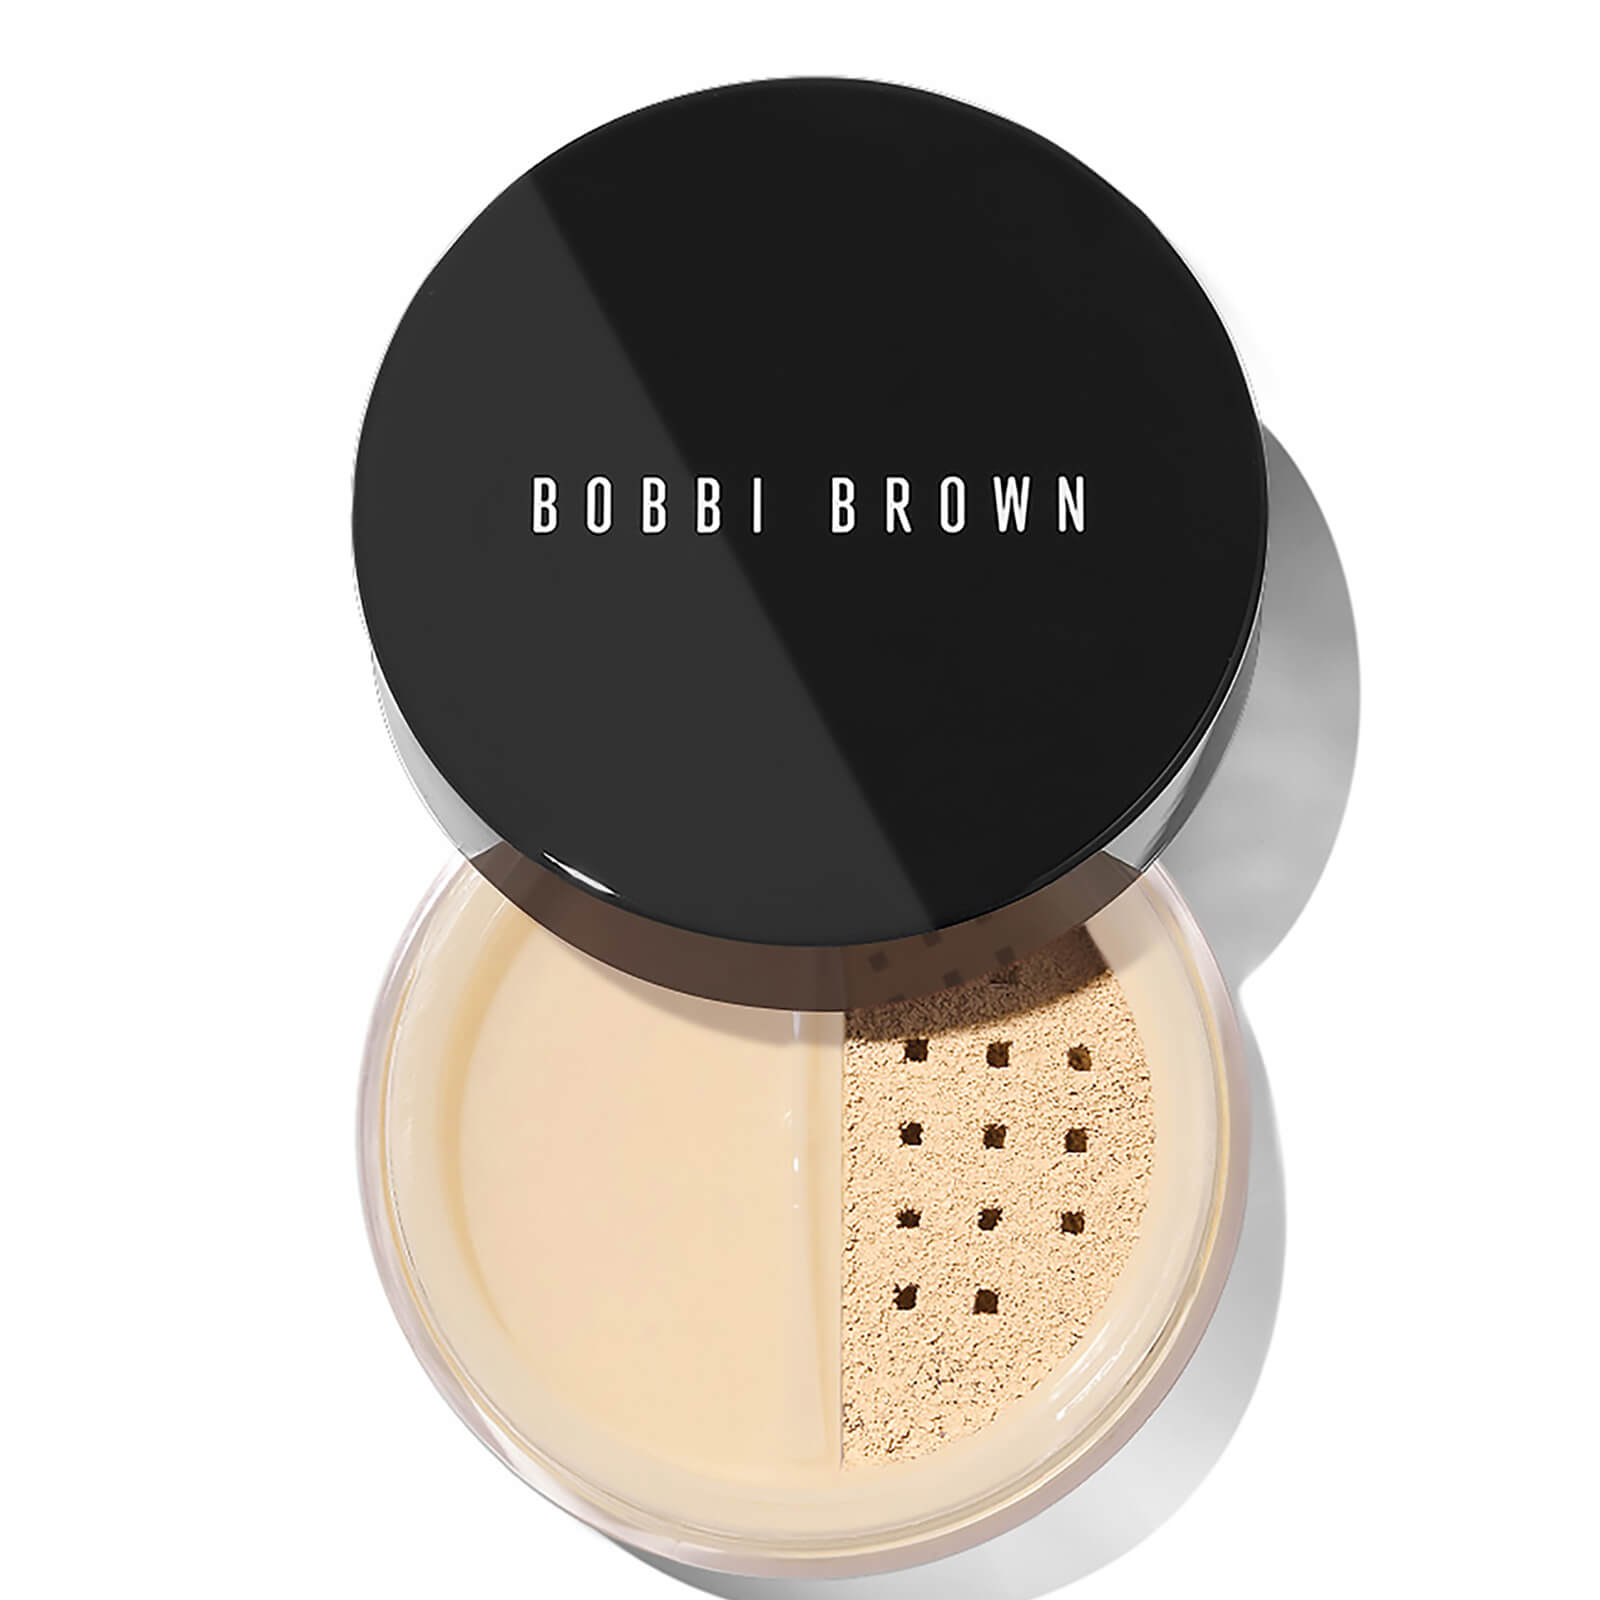 Bobbi Brown Sheer Finish Loose Powder 10g (Various Shades) - Soft Sand